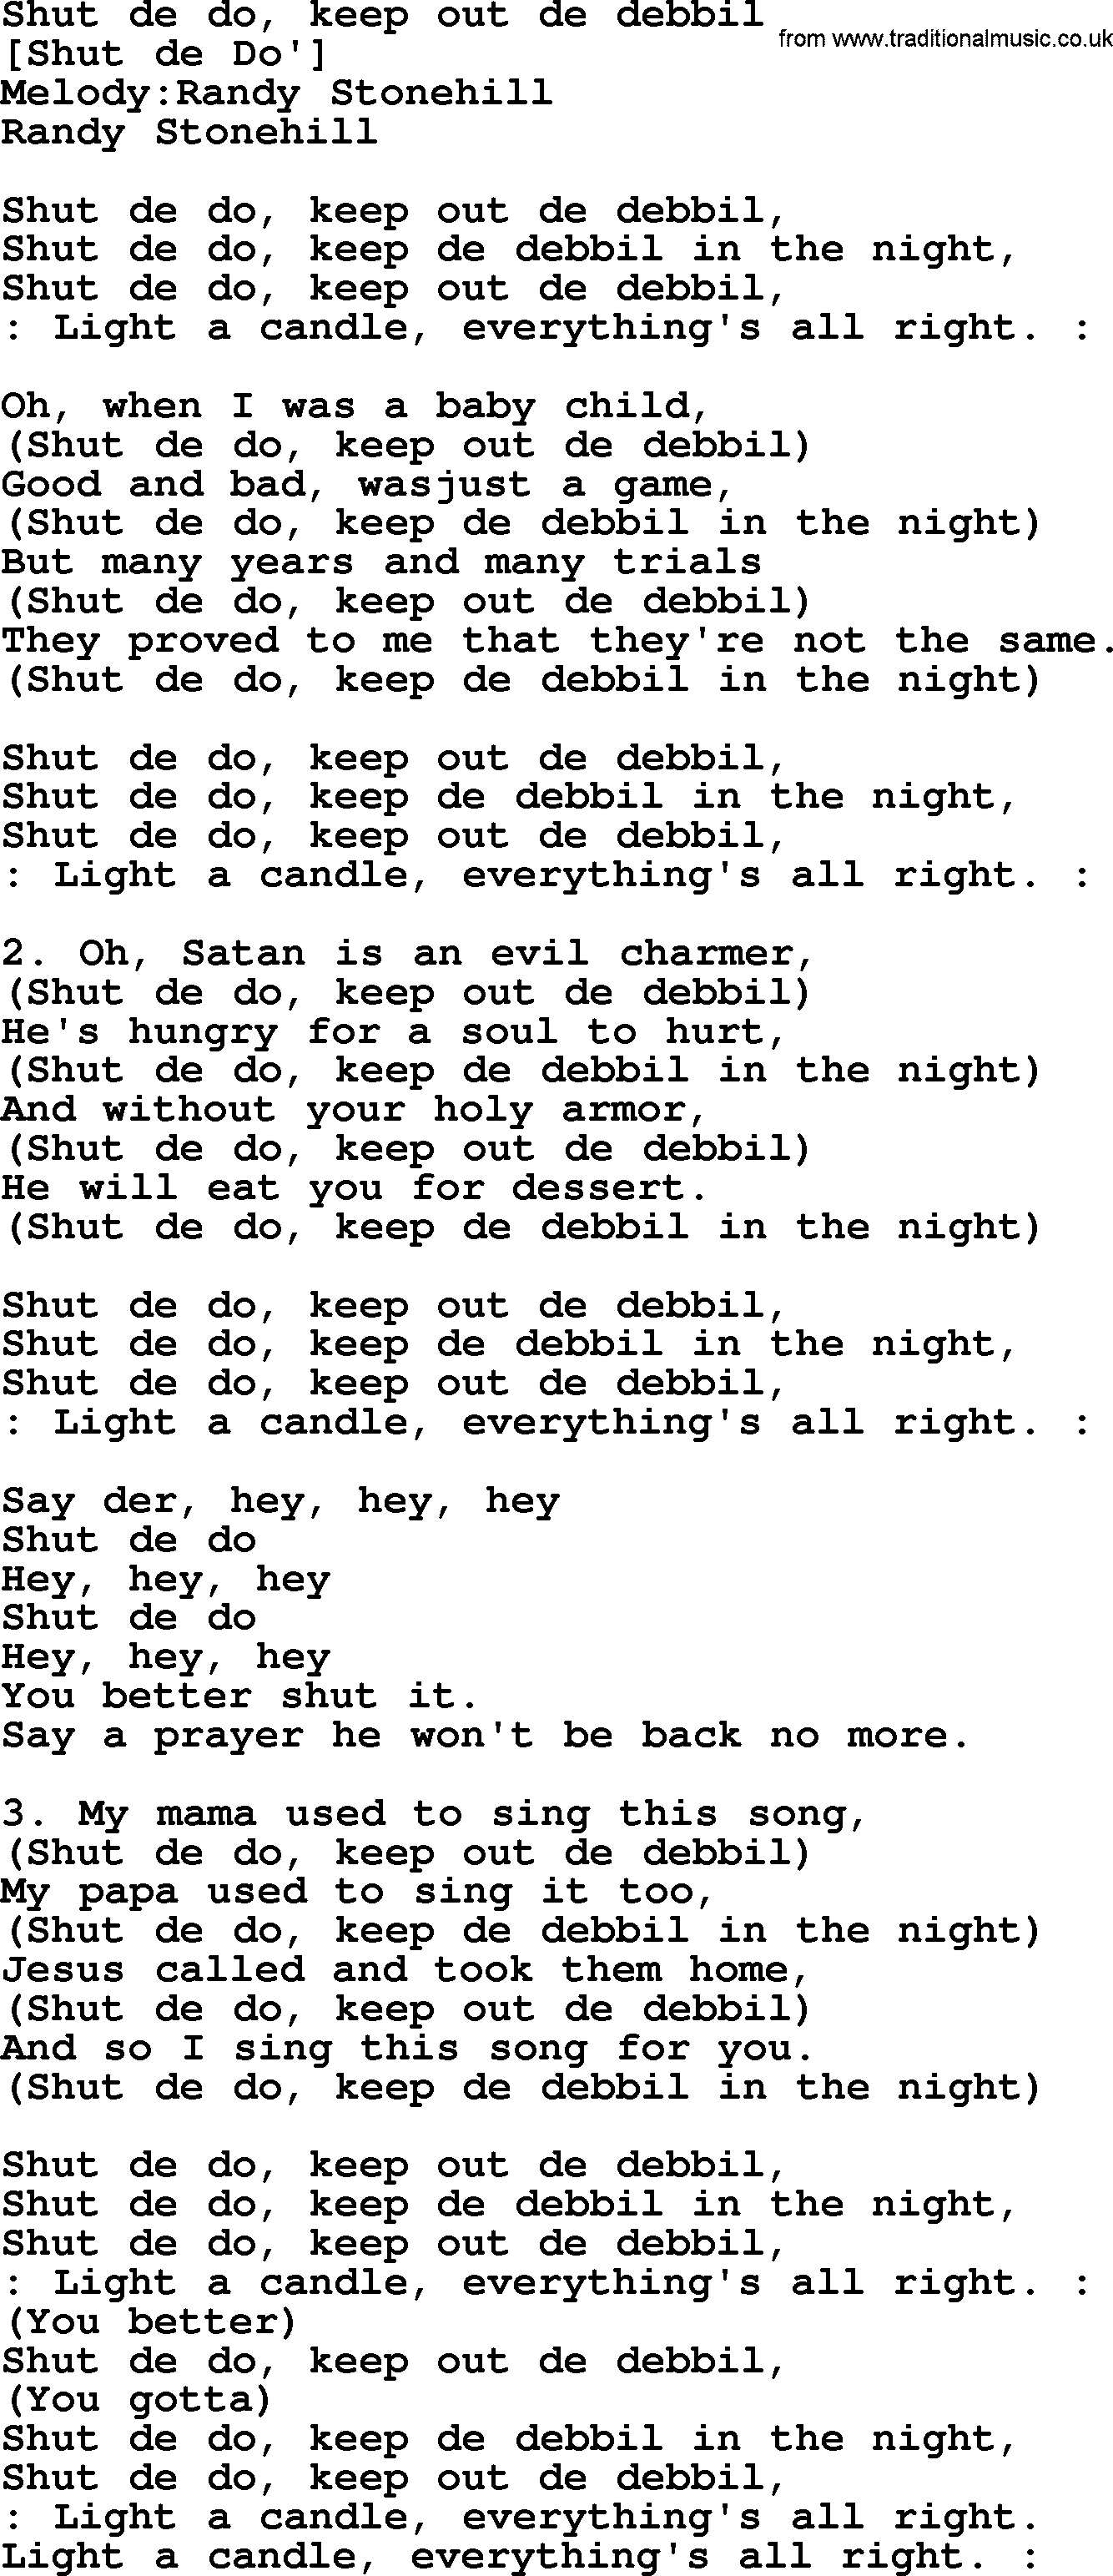 Old American Song: Shut De Do, Keep Out De Debbil, lyrics